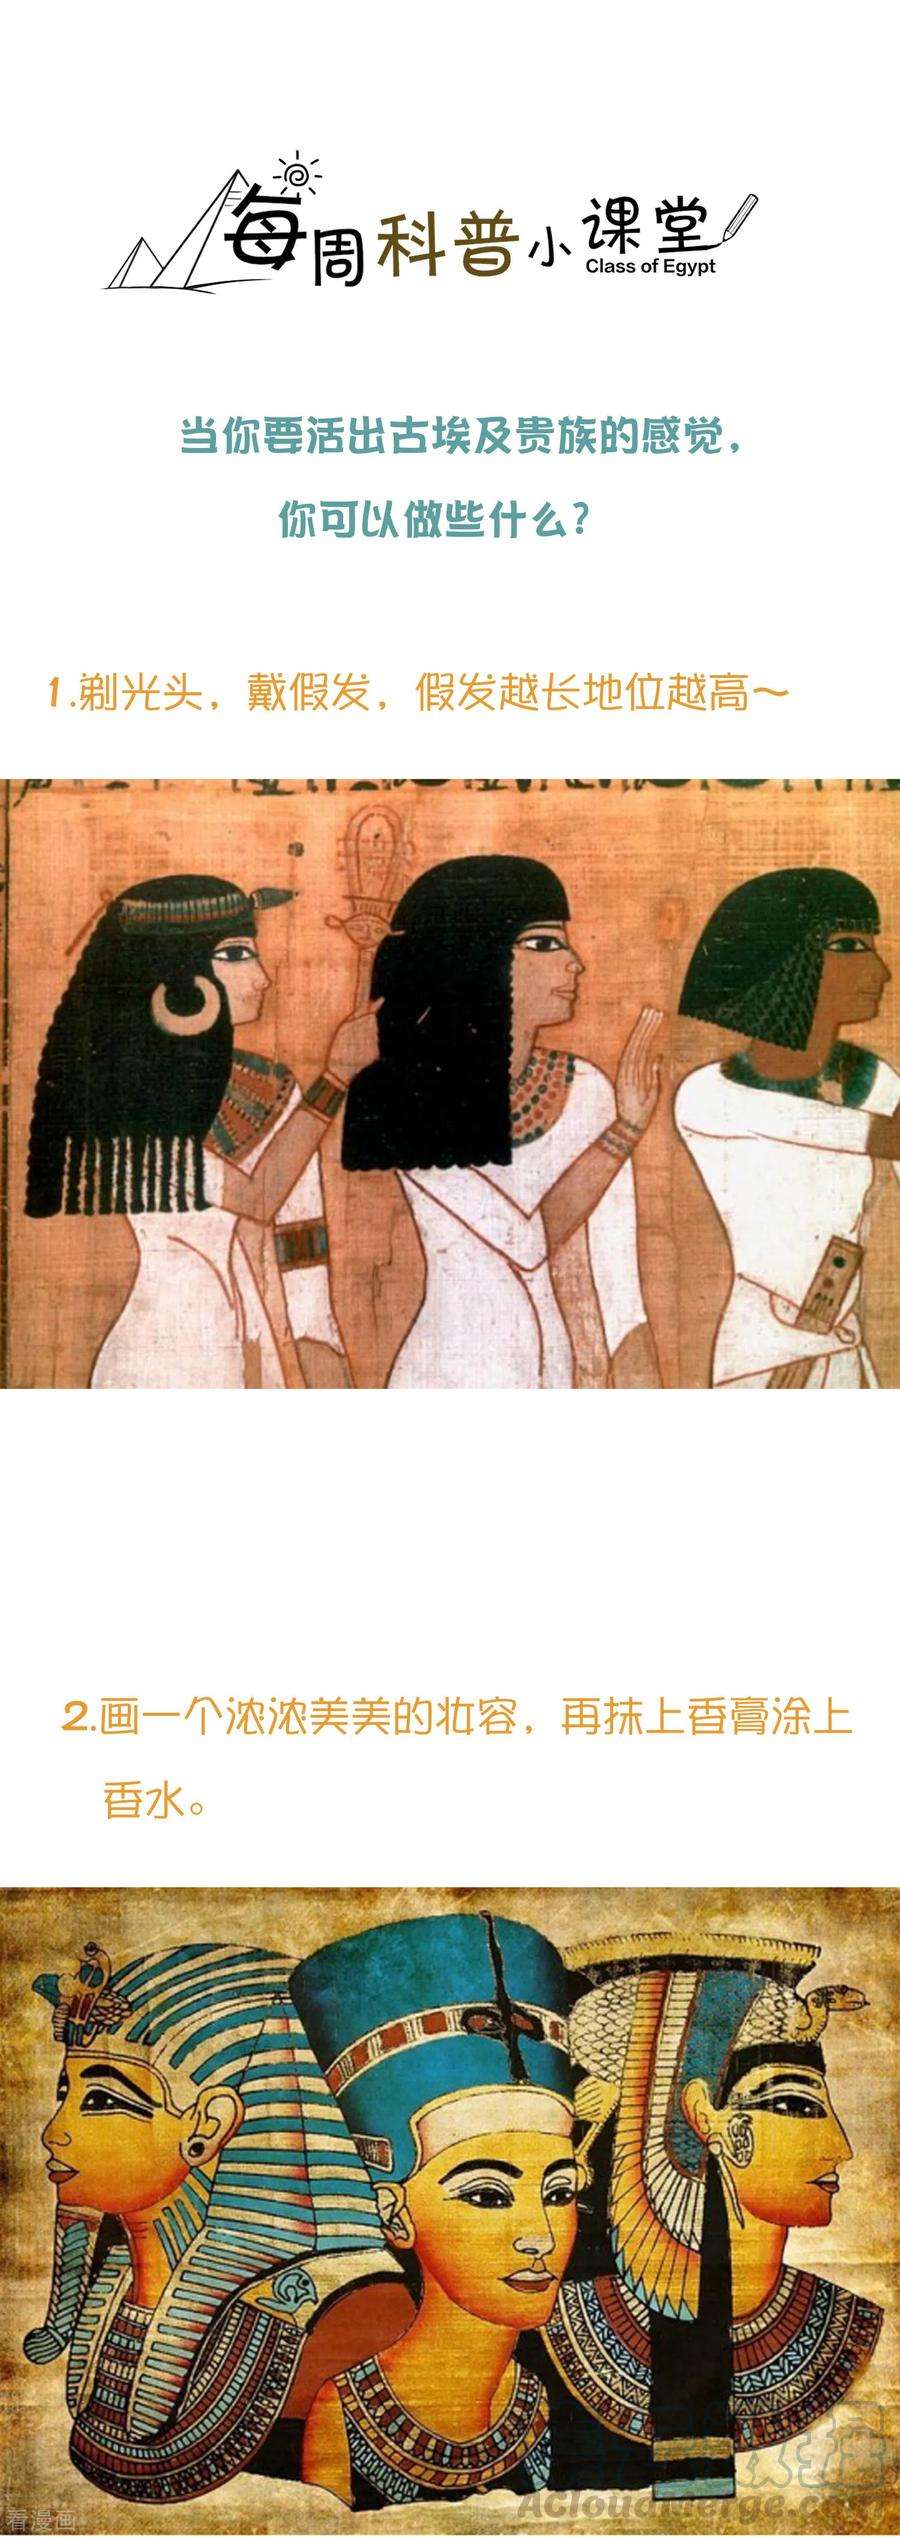 王的第一宠后王的茶话会32 穿越埃及当贵族